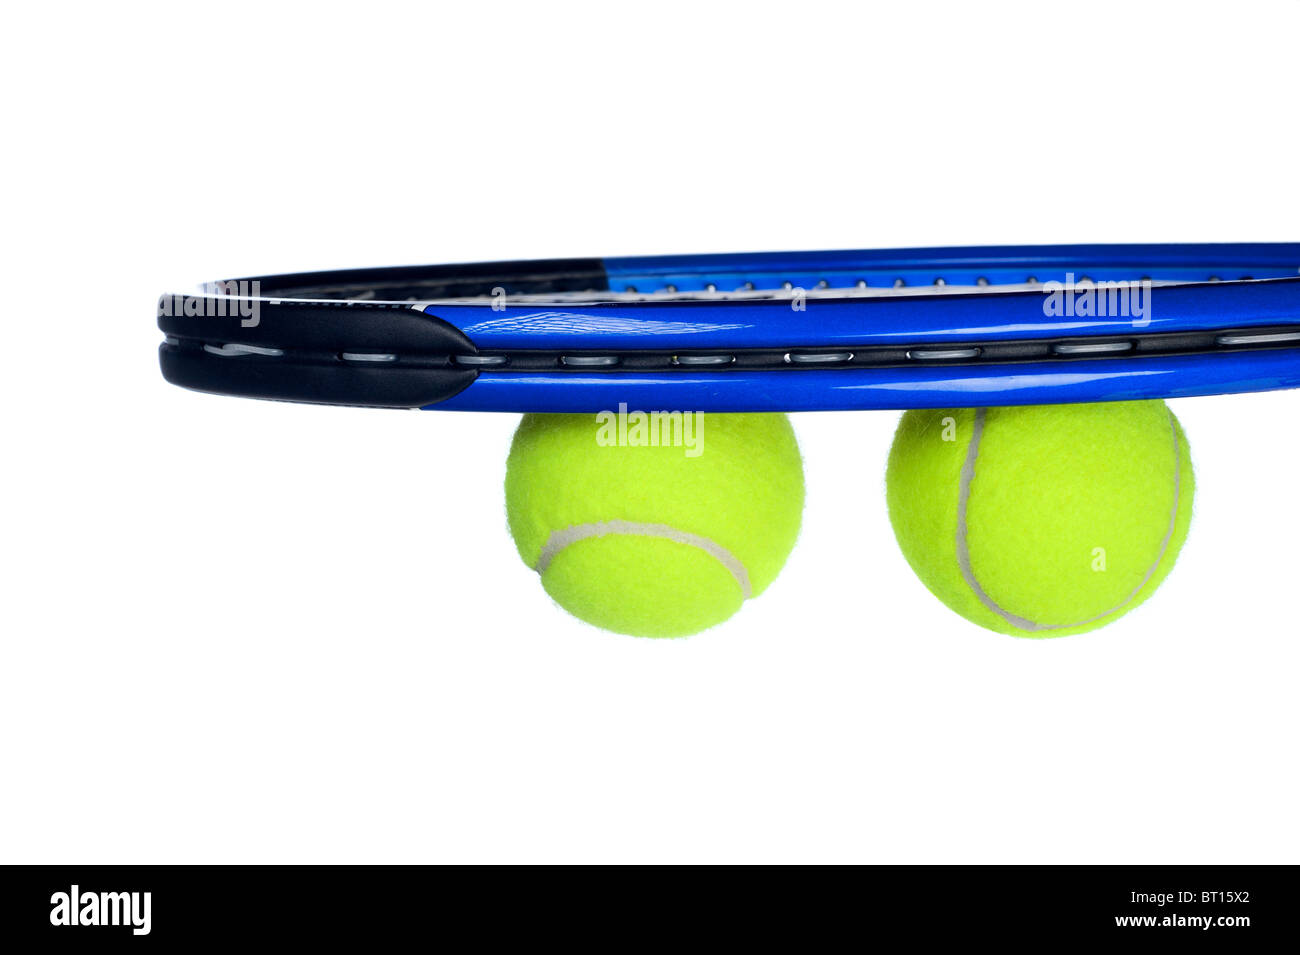 L'équipement de tennis dont une raquette et balles isolated on white Banque D'Images